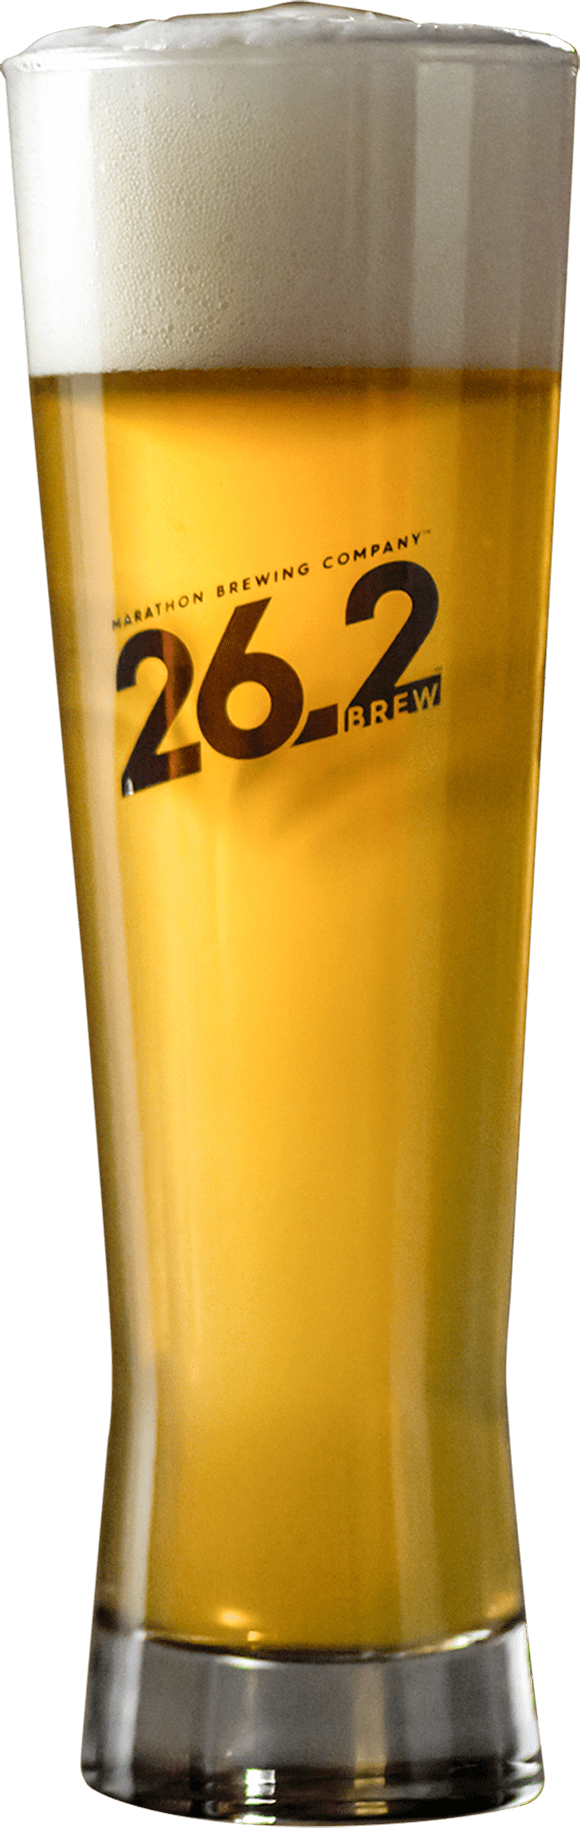 26.2 Beer